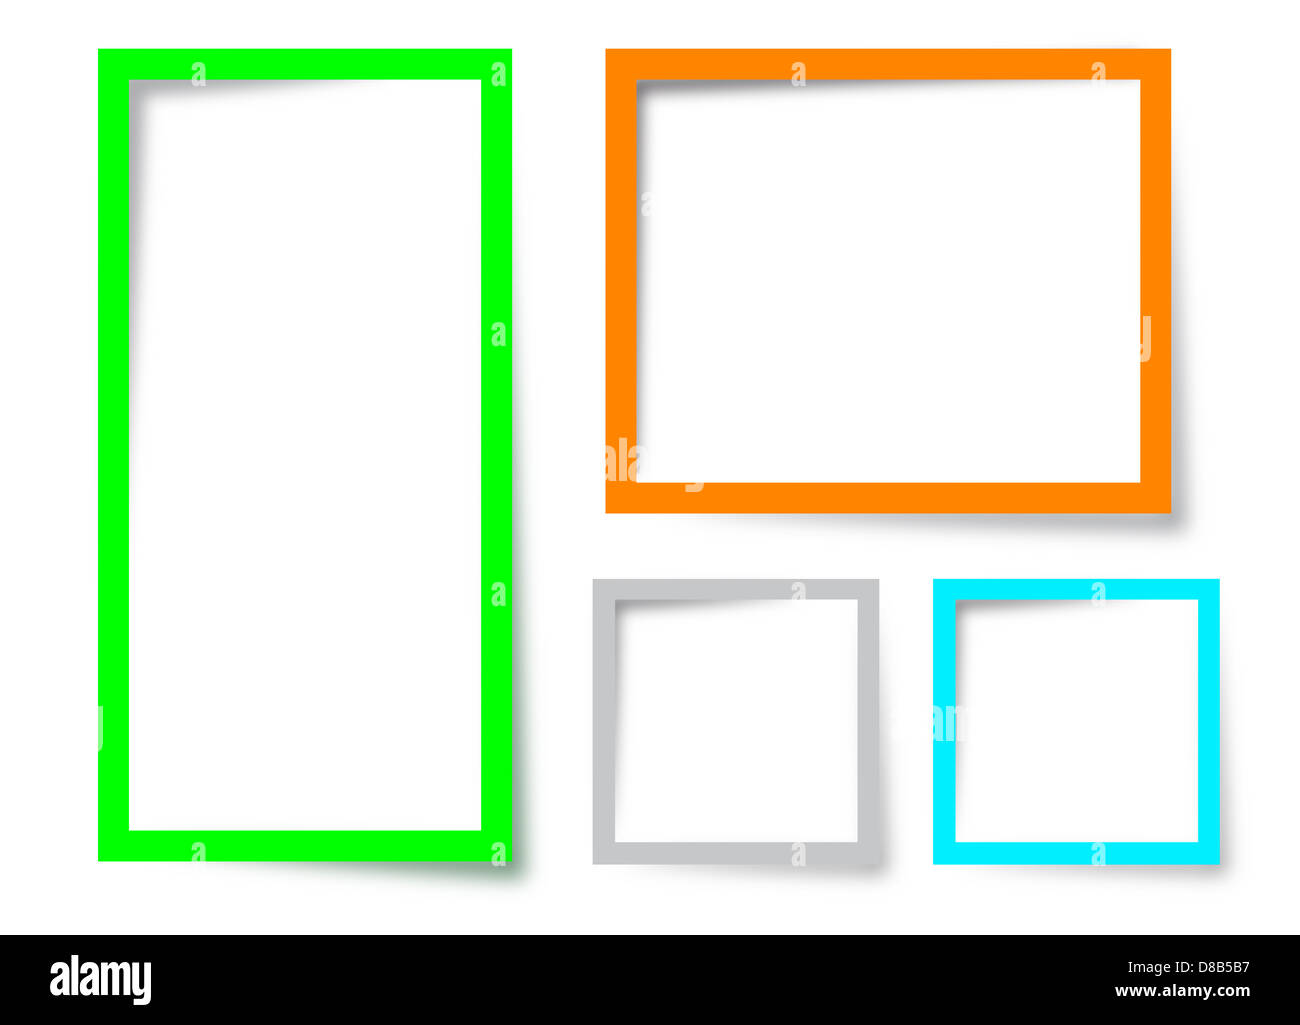 Four text box design on a white background Stock Photo - Alamy